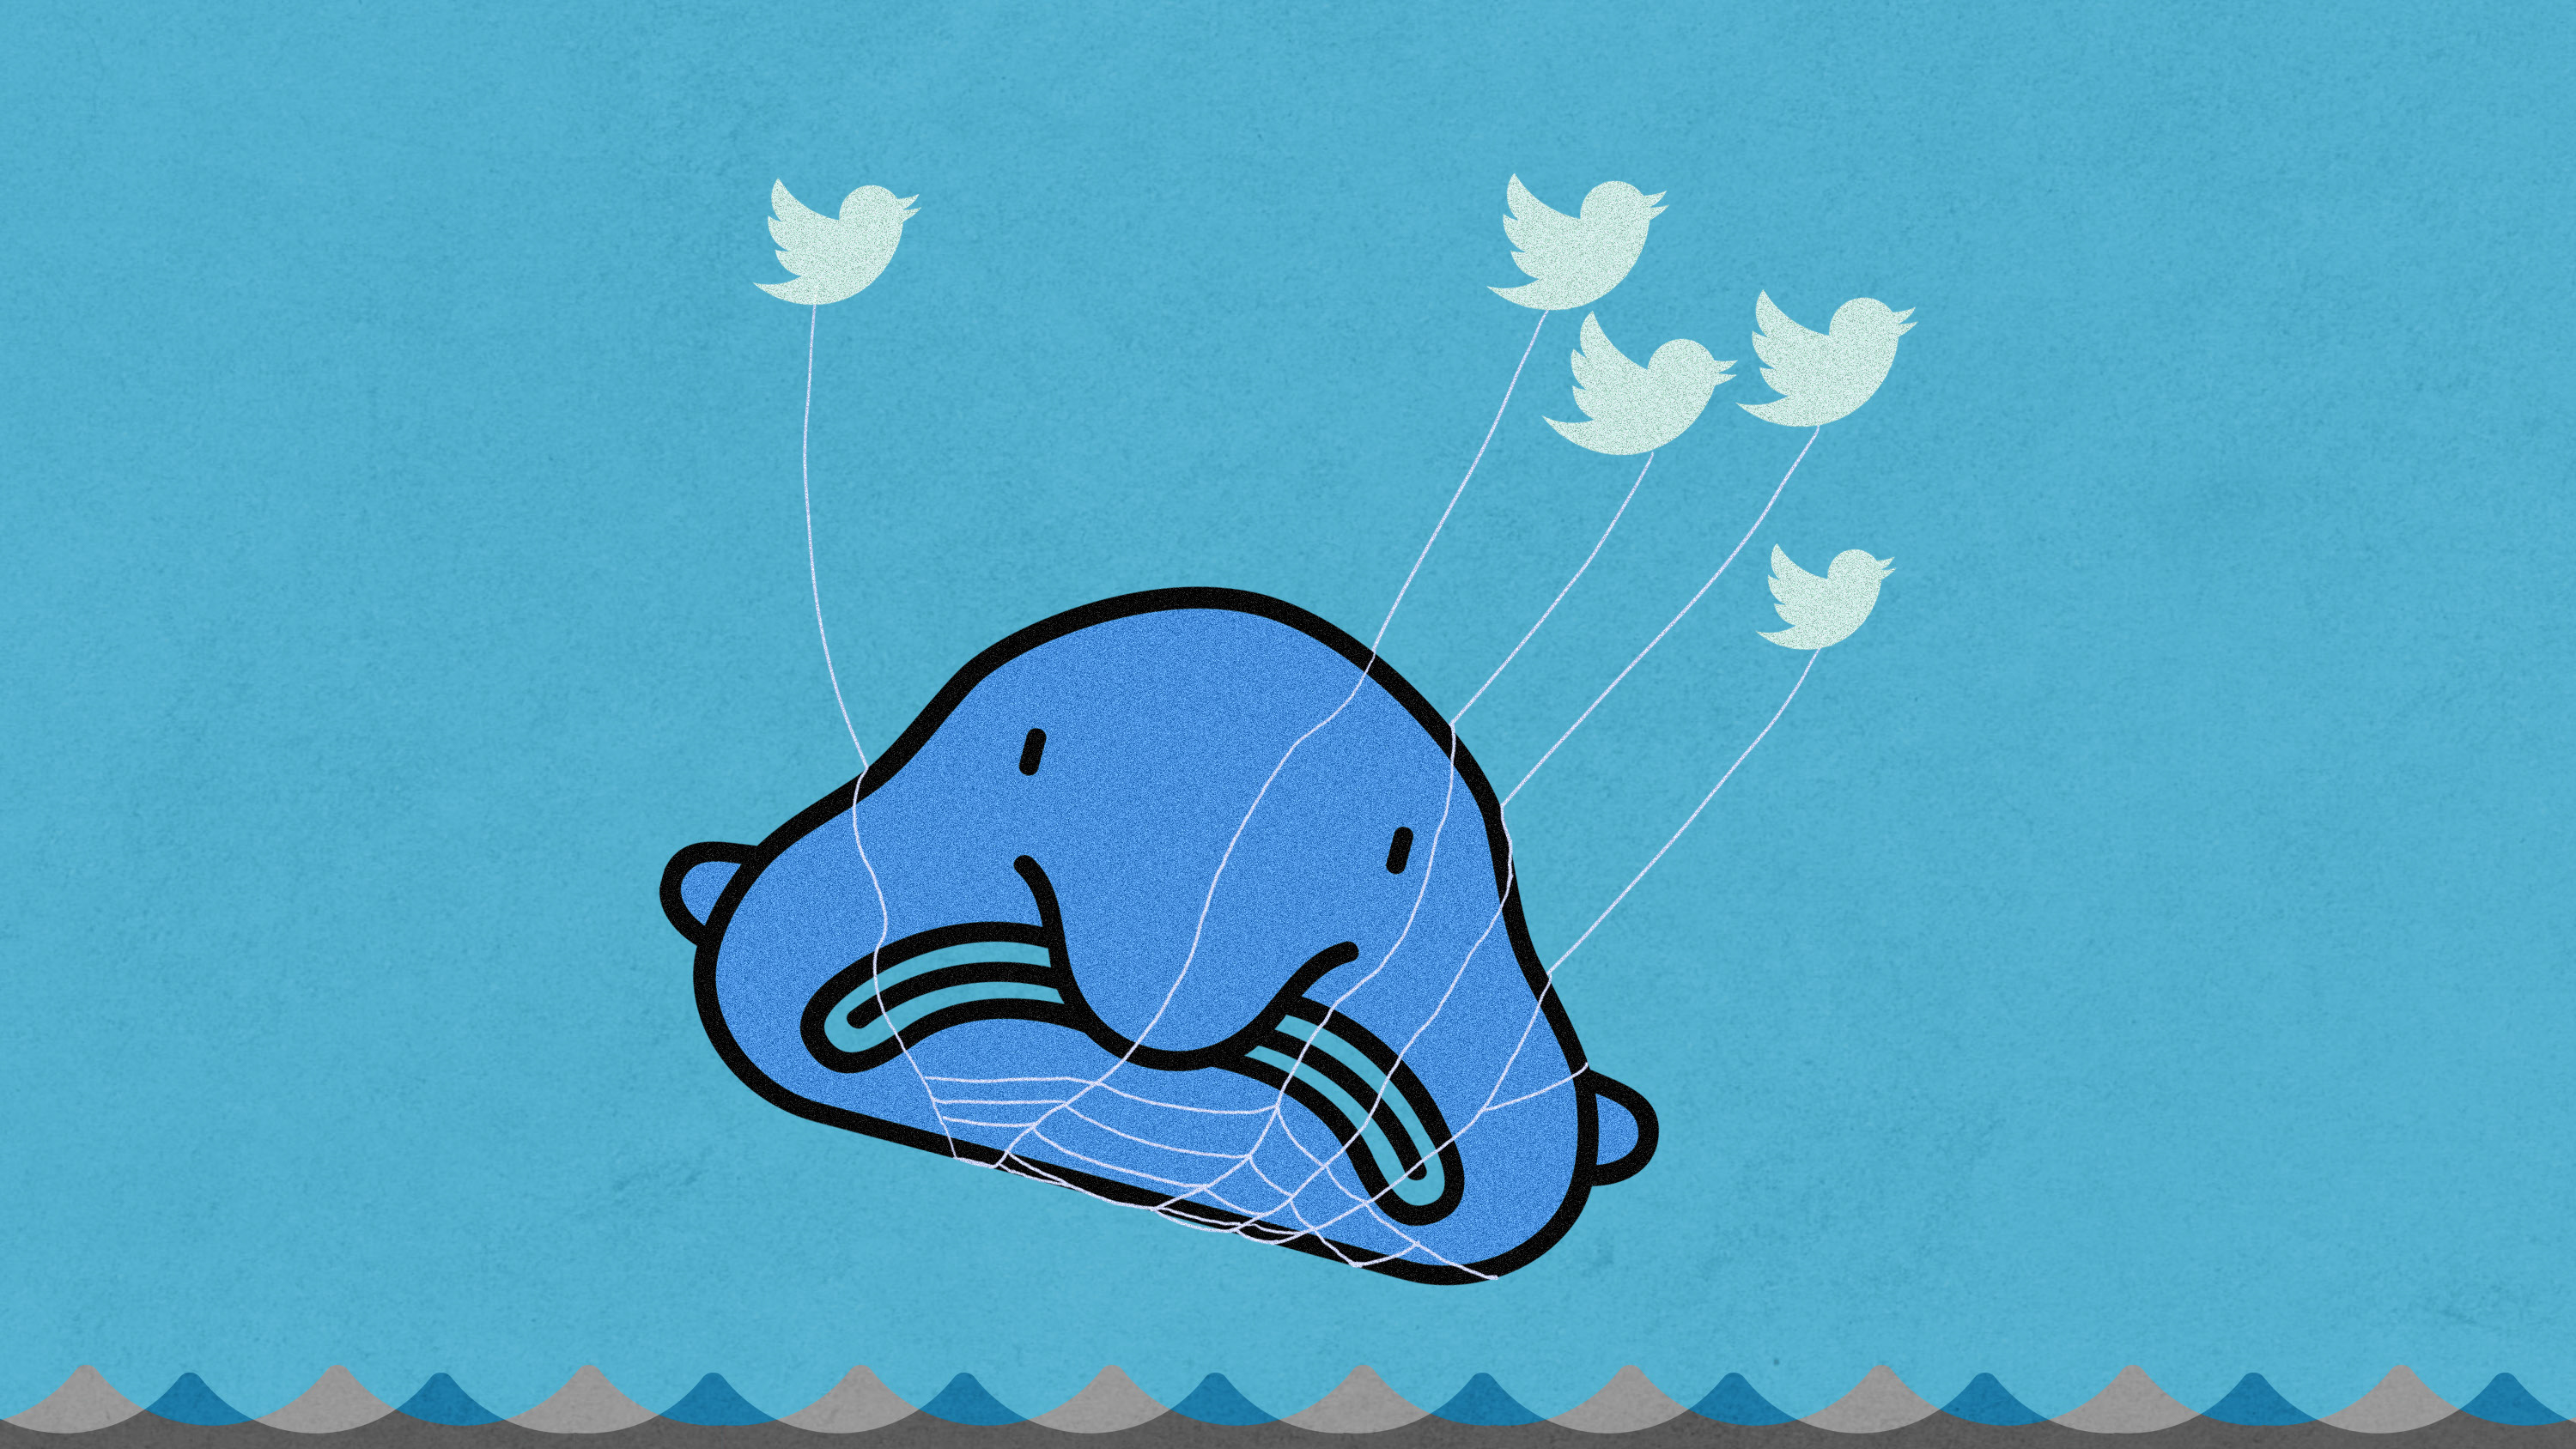 blobfish as the twitter "fail whale"